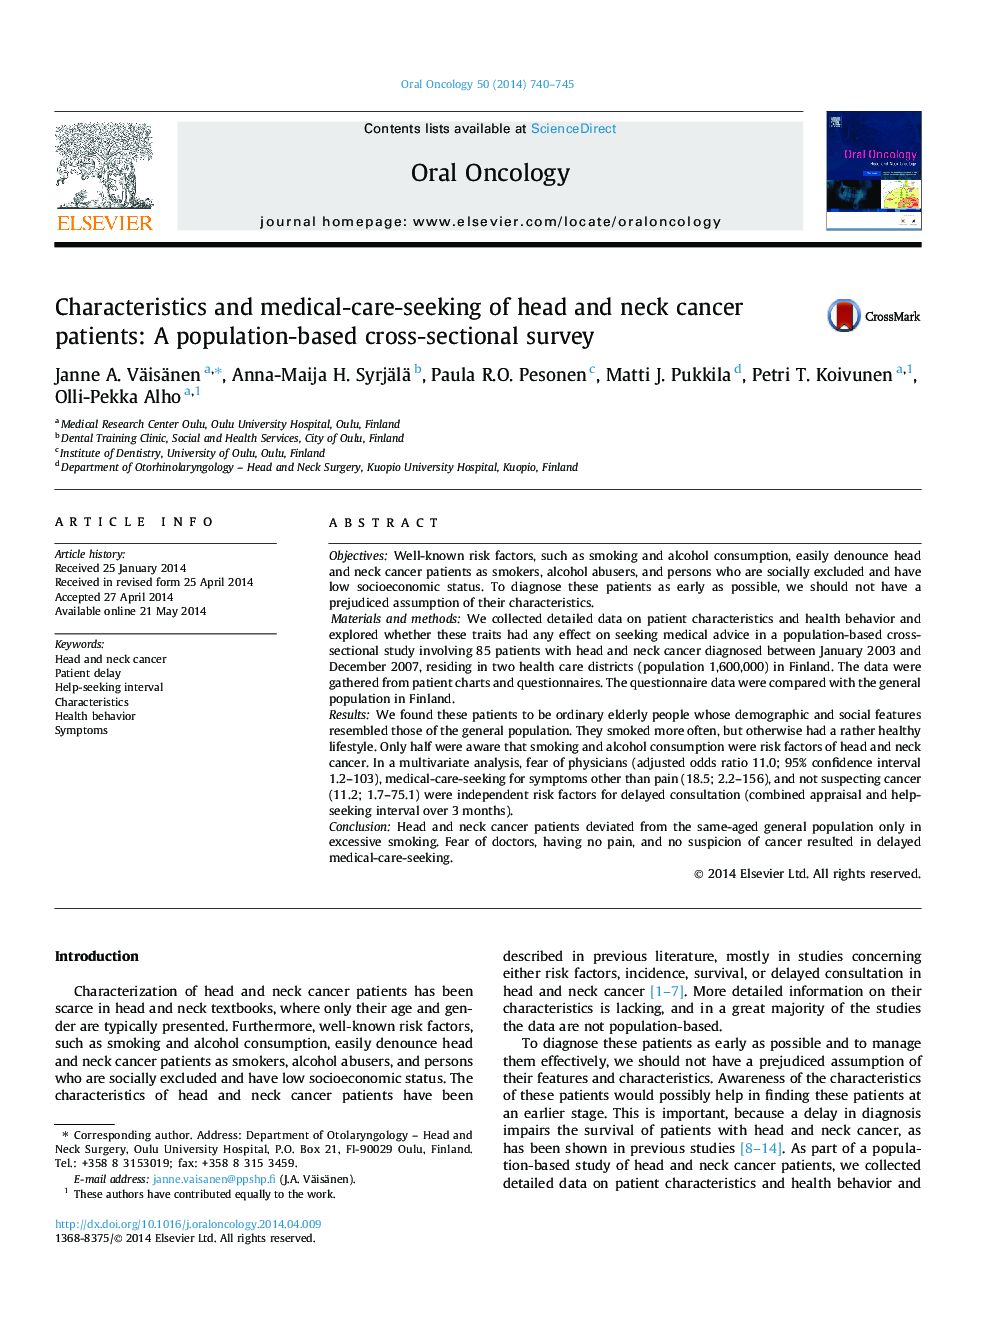 مشخصات و مراقبت های پزشکی مراقبت از بیماران مبتلا به سرطان سر و گردن: یک بررسی مقطعی بر اساس جمعیت 